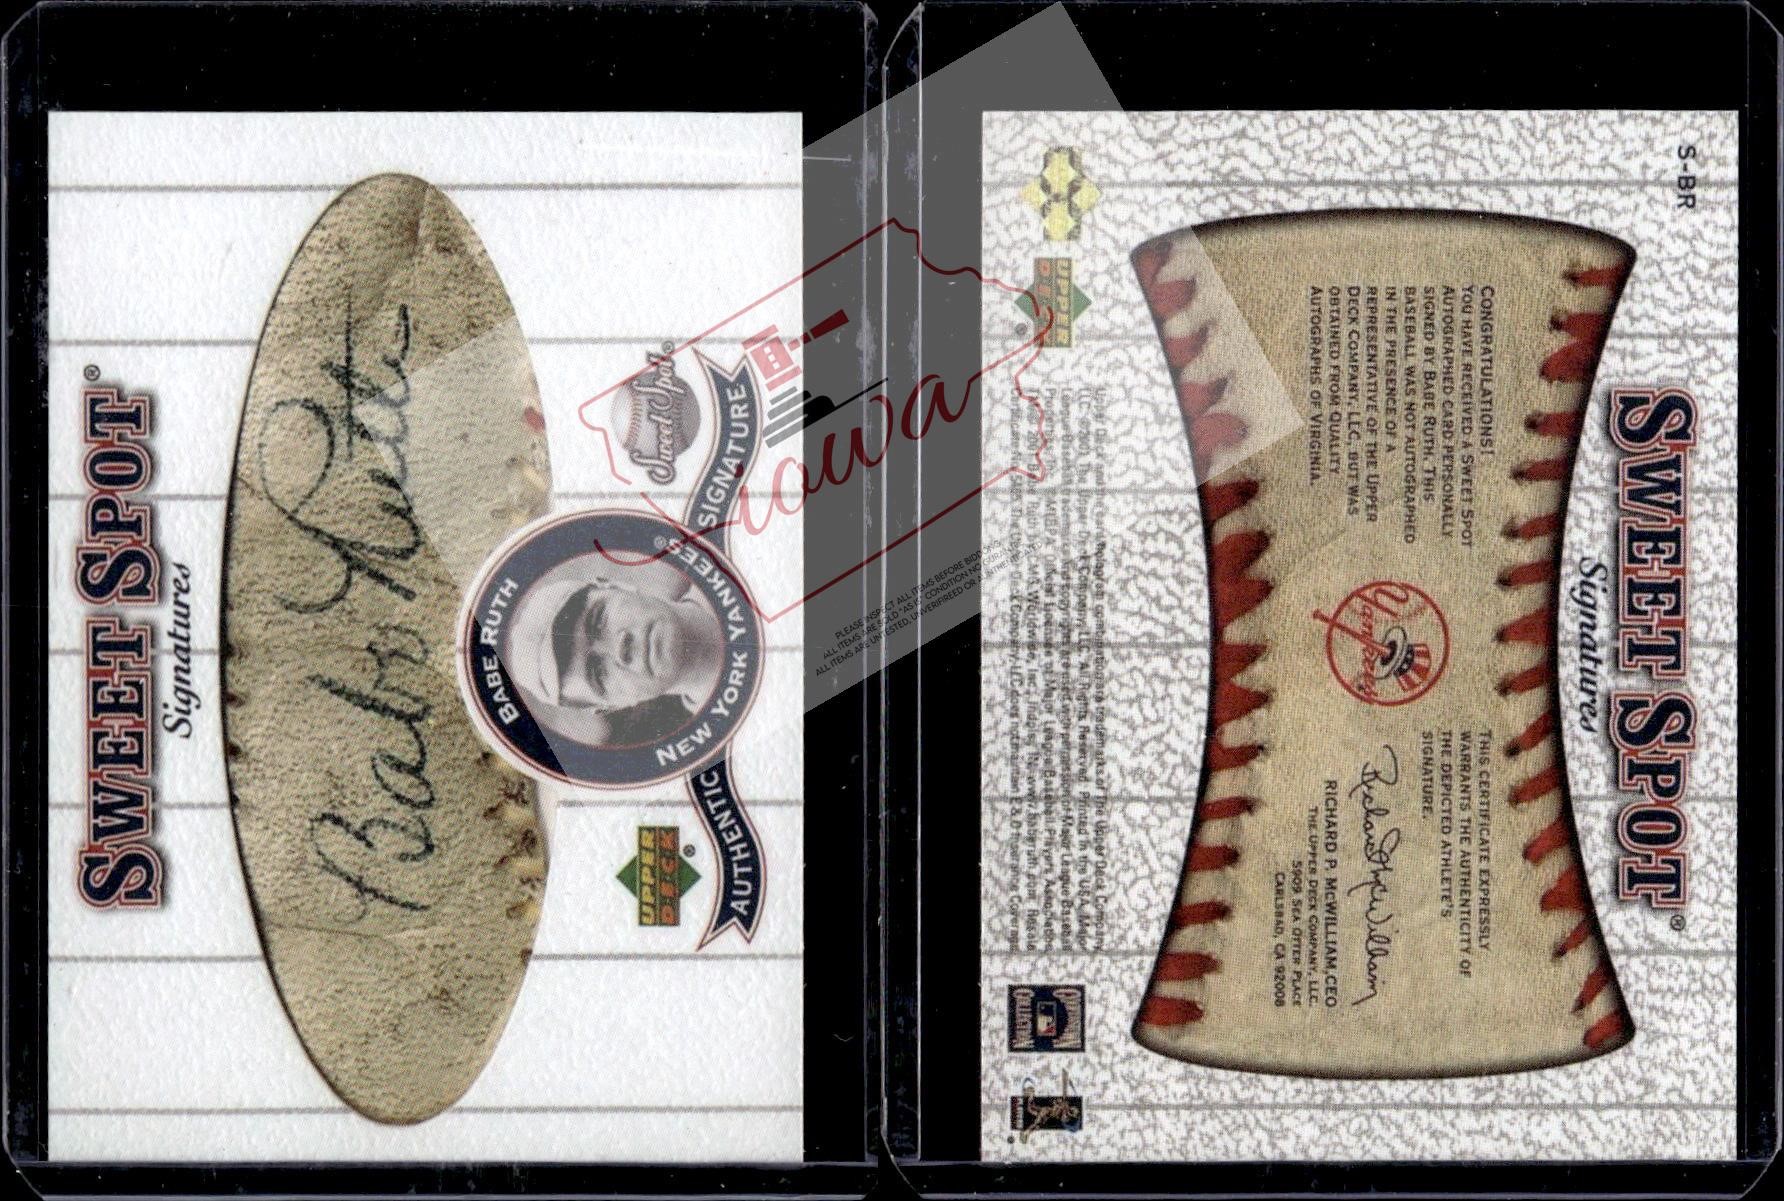 Babe Ruth Upper Deck Sweet Spot reprint card